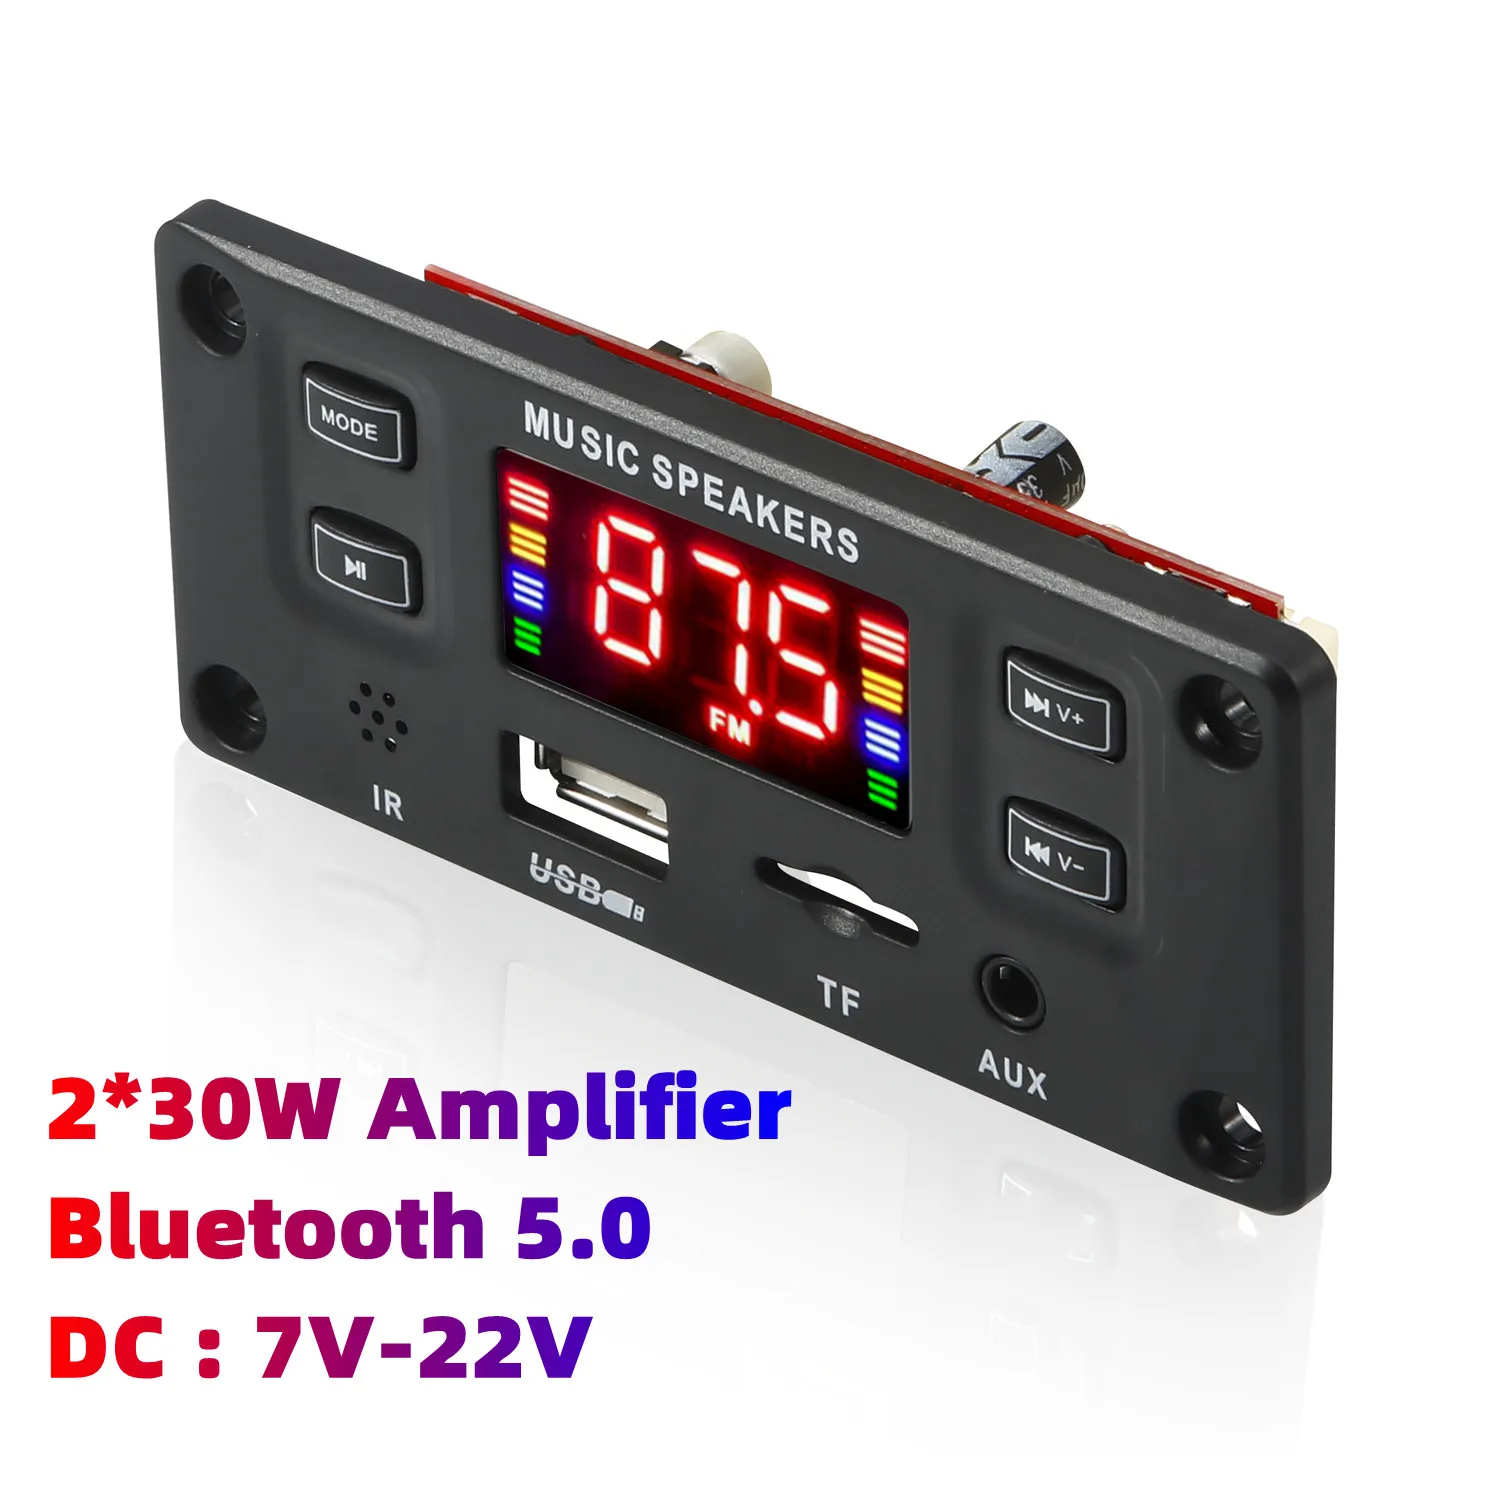 Freisprecheinrichtung 60W/50W/40W Verstärker Drahtlose Bluetooth 5,0 MP3 Decoder Board Auto Audio USB TF FM Radio Modul mit Fernbedienung